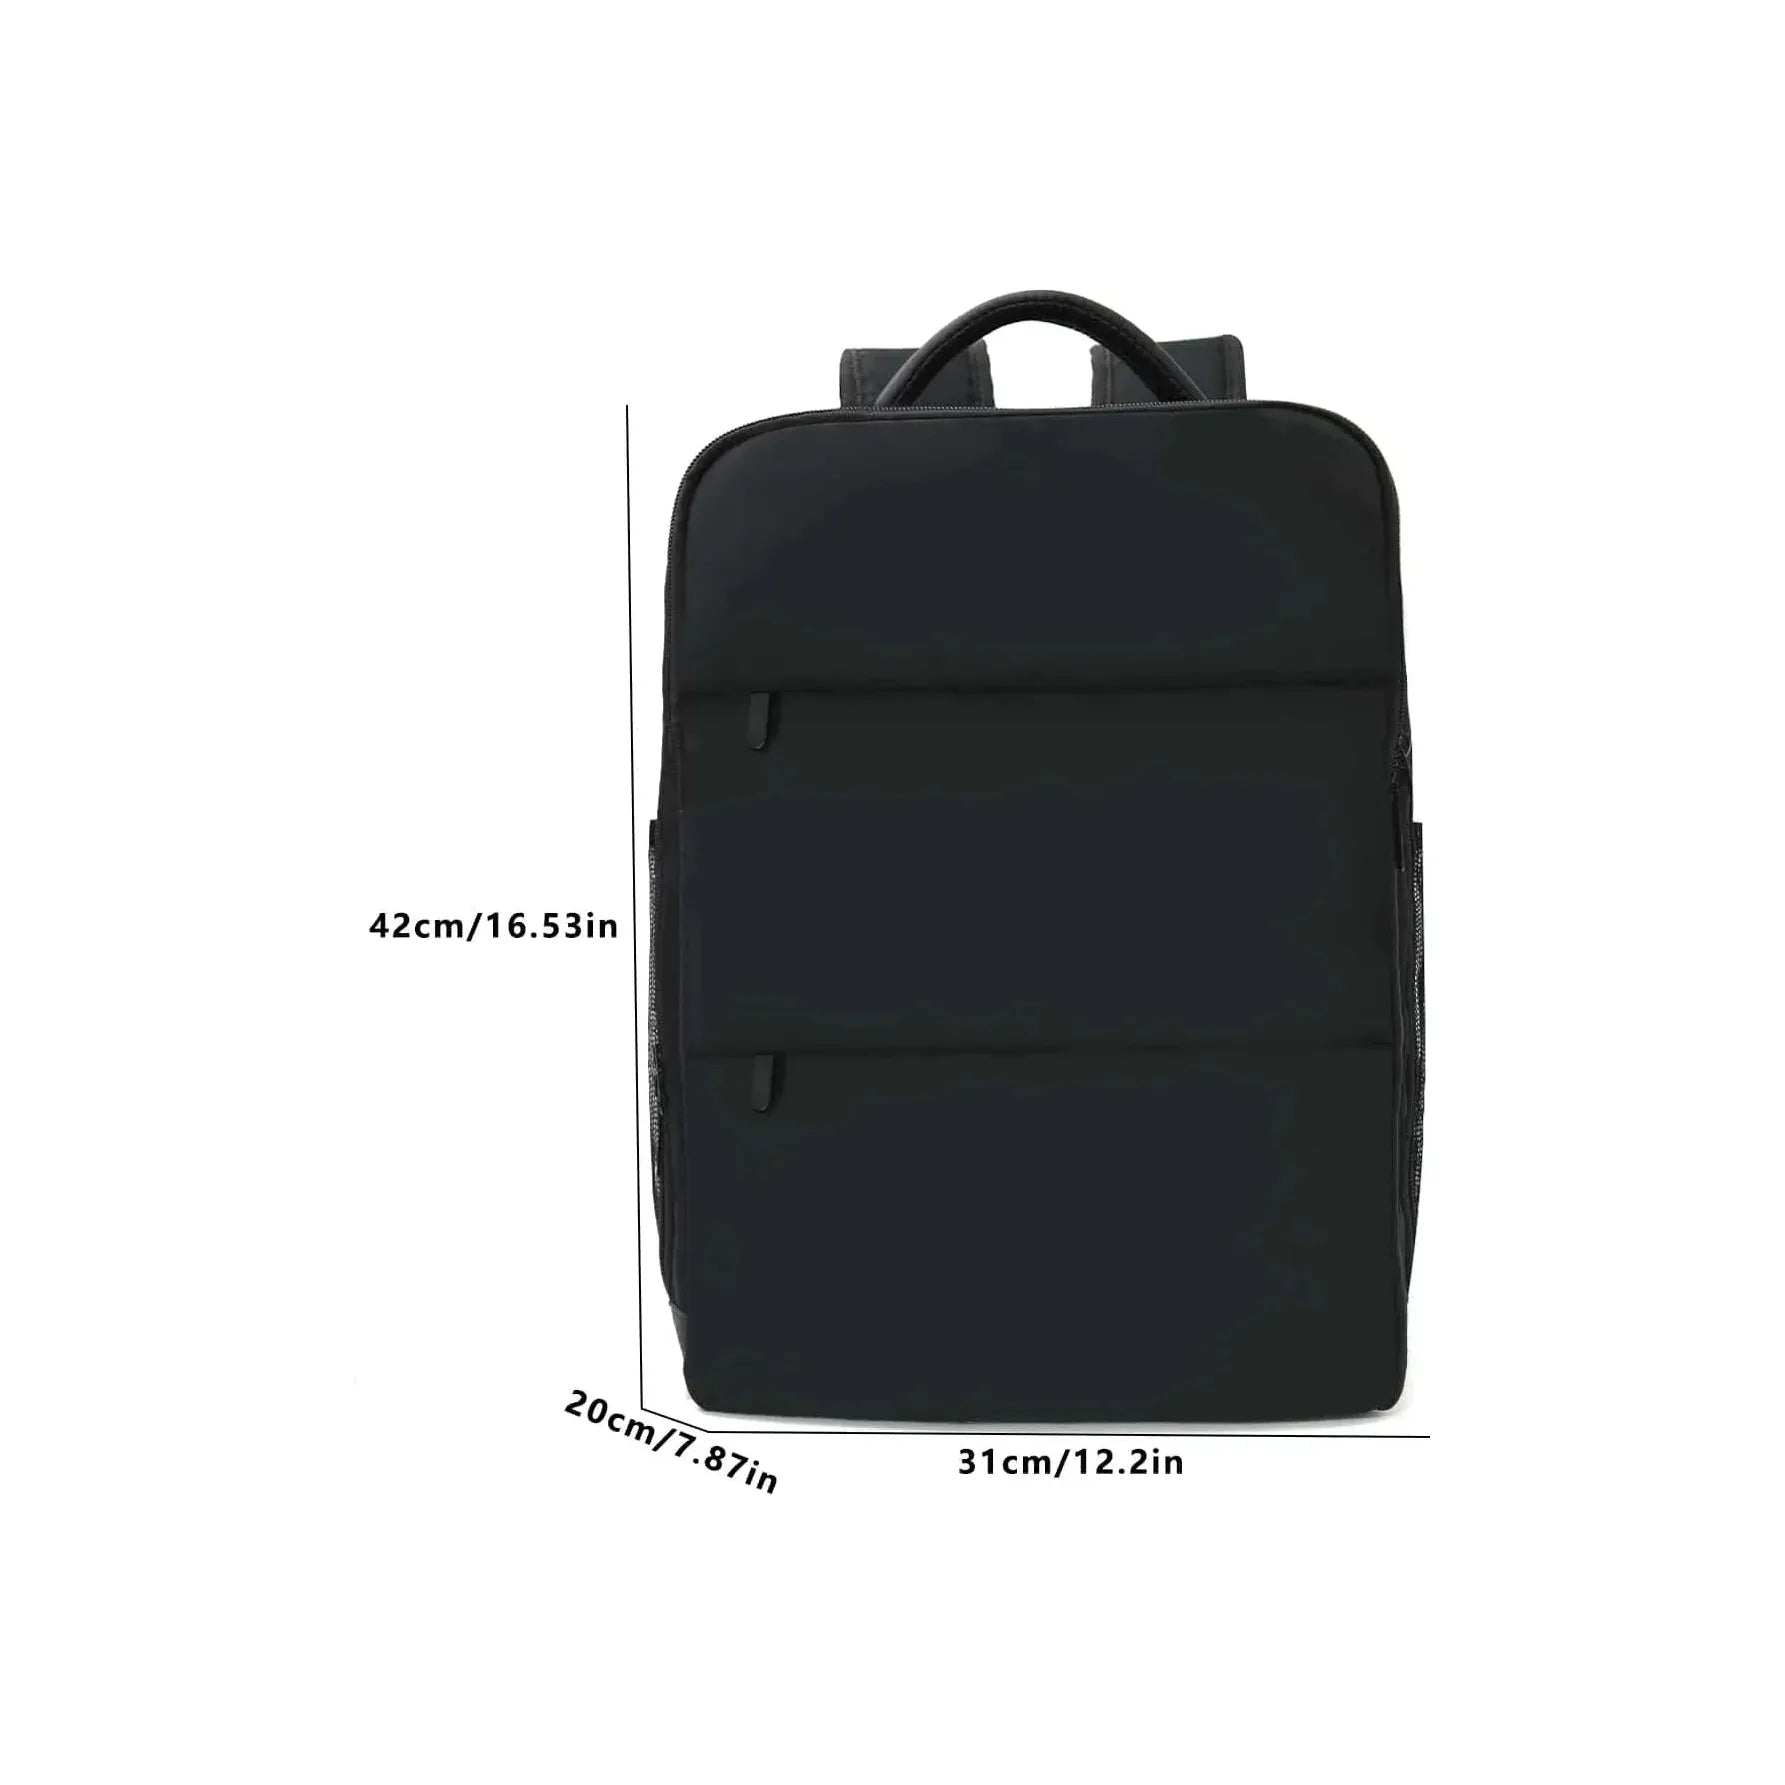 Vielseitiger 16-Zoll Laptop-Rucksack: Leicht, wasserdicht & ideal für Geschäftsreisen - Jossbe